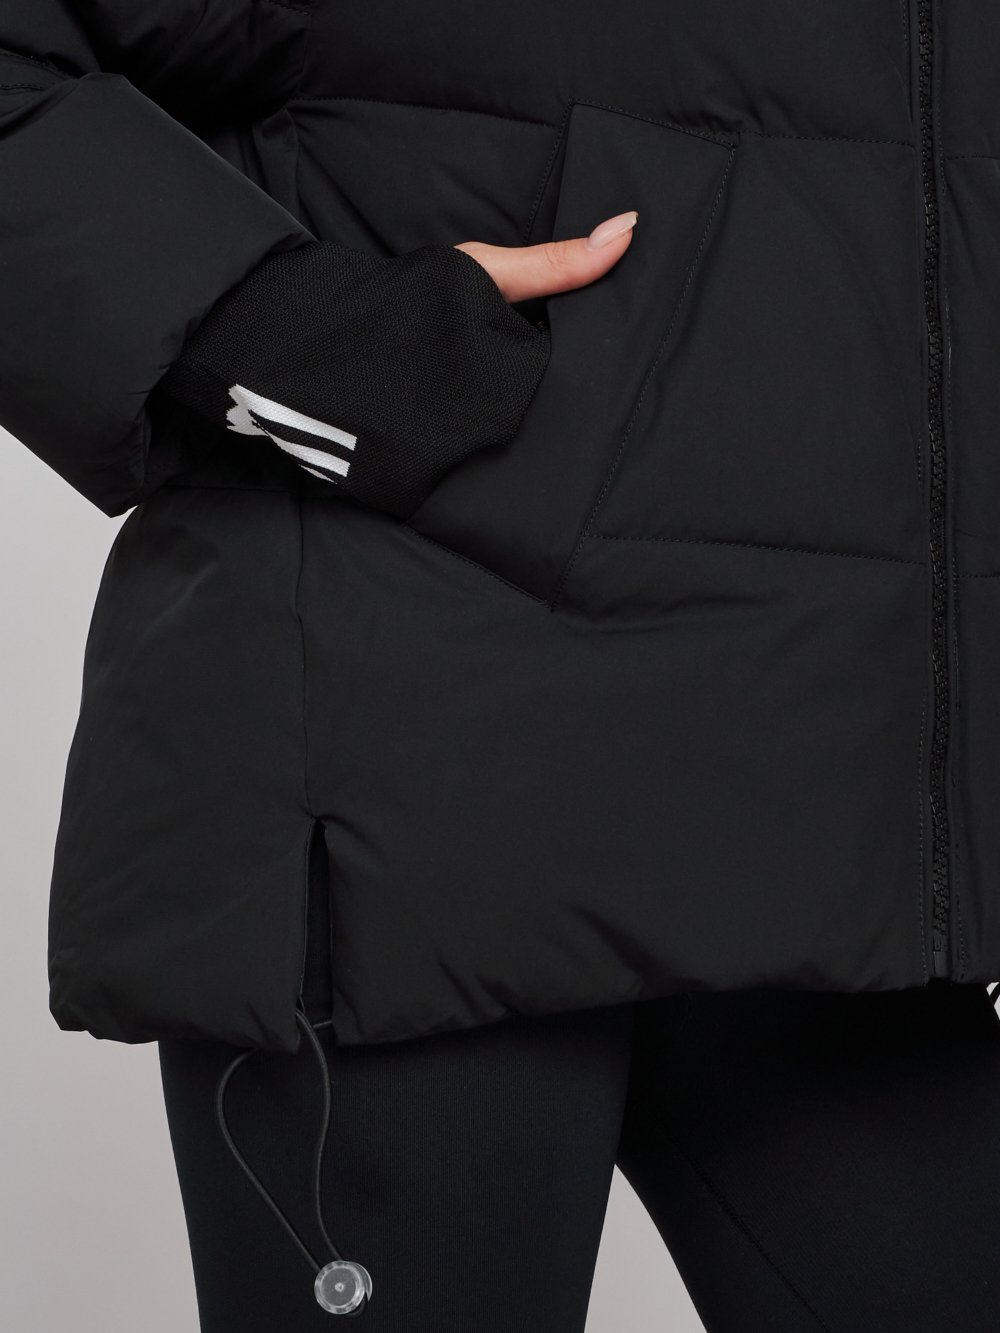 Купить куртку зимнюю оптом от производителя недорого в Москве 52306Ch 1